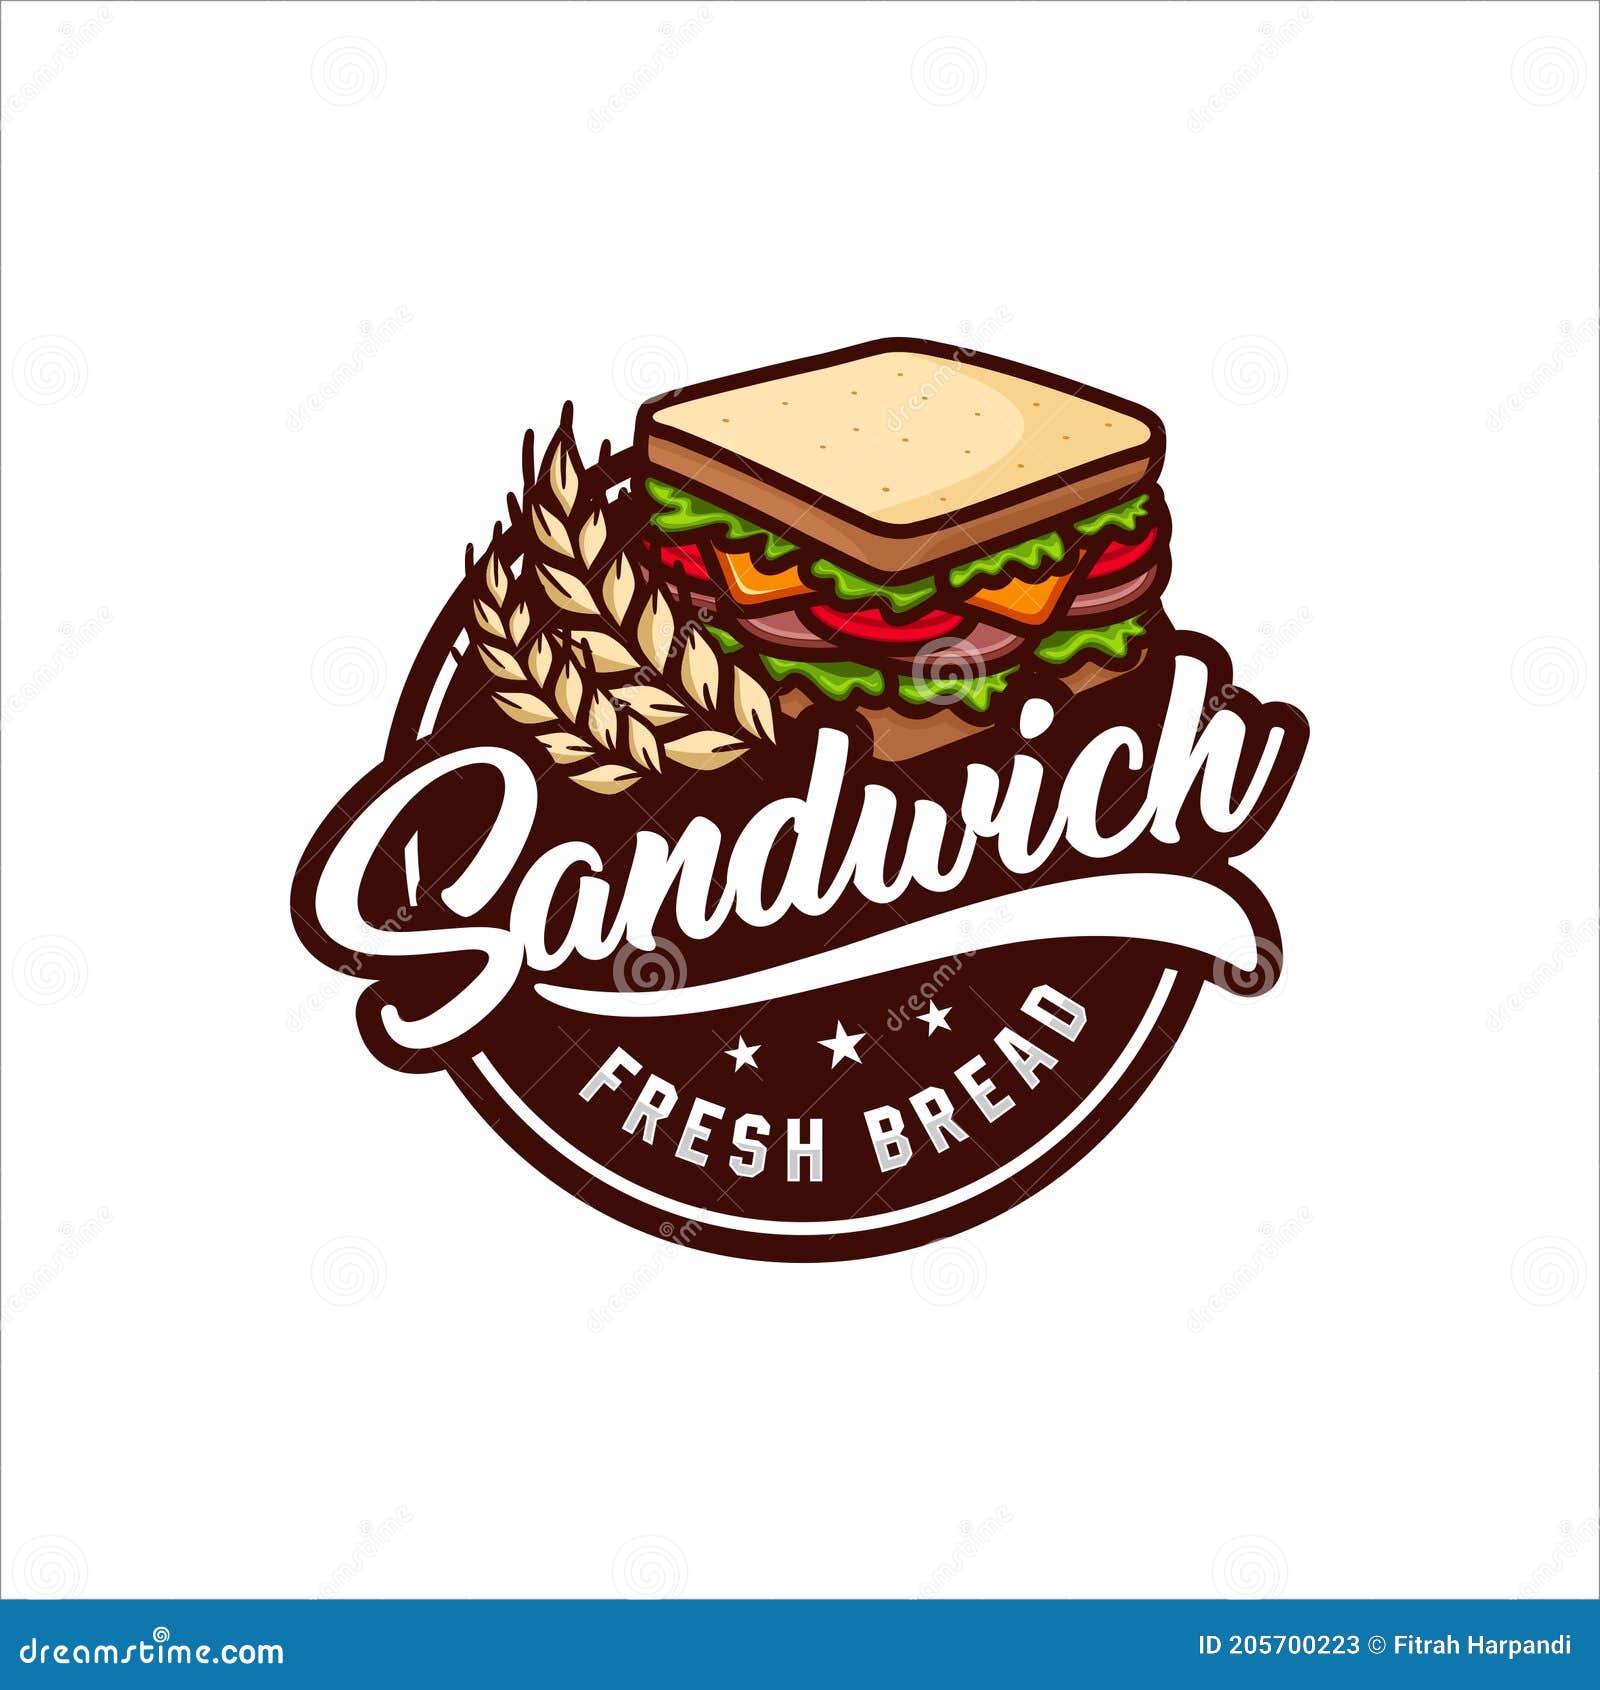 sandwich logo ideas 2